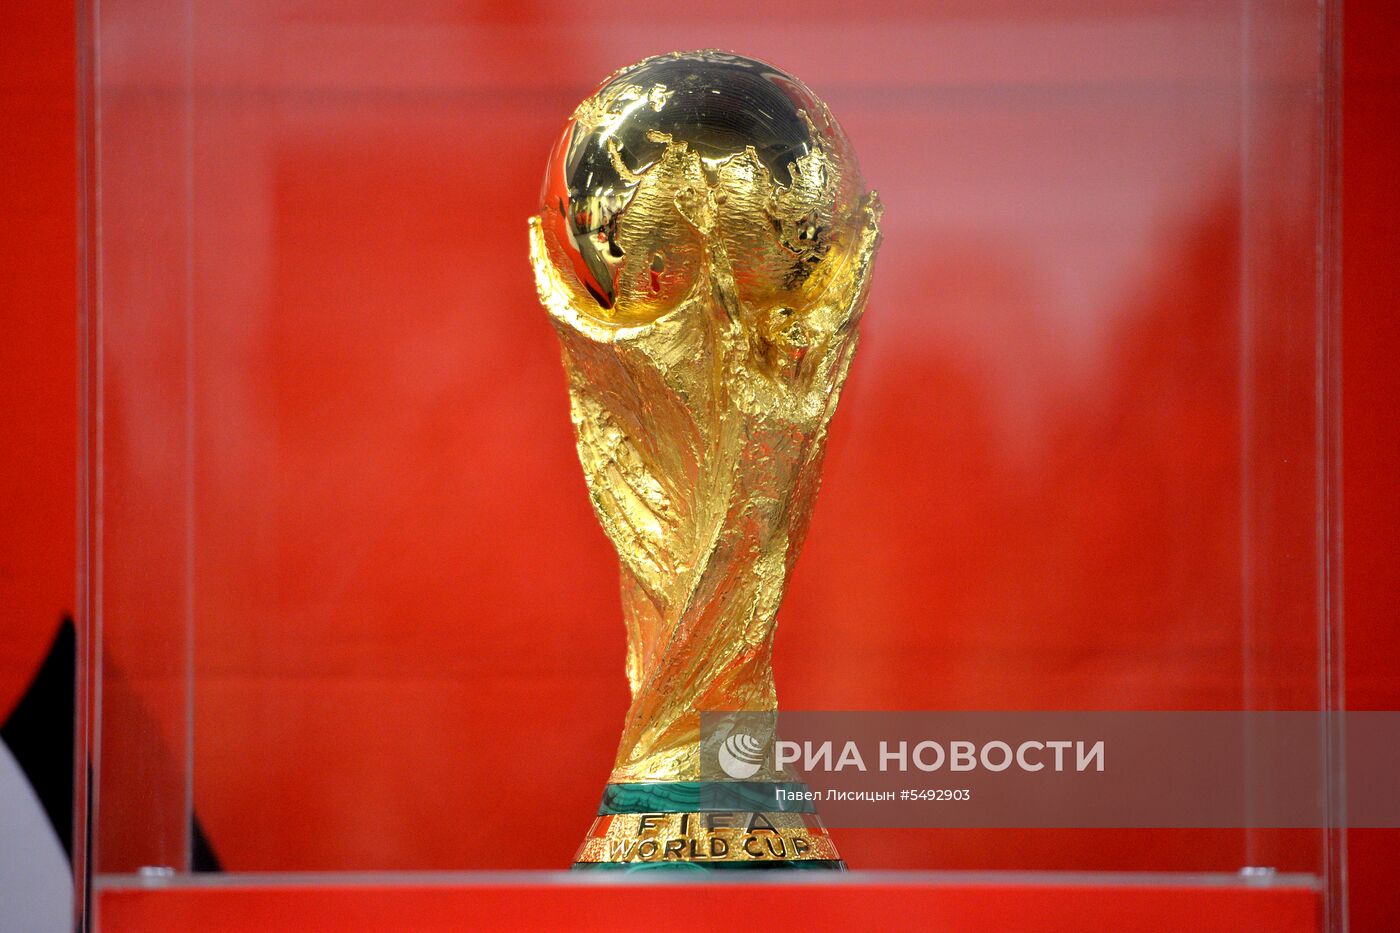 Кубок ЧМ-2018 по футболу представили в Екатеринбурге